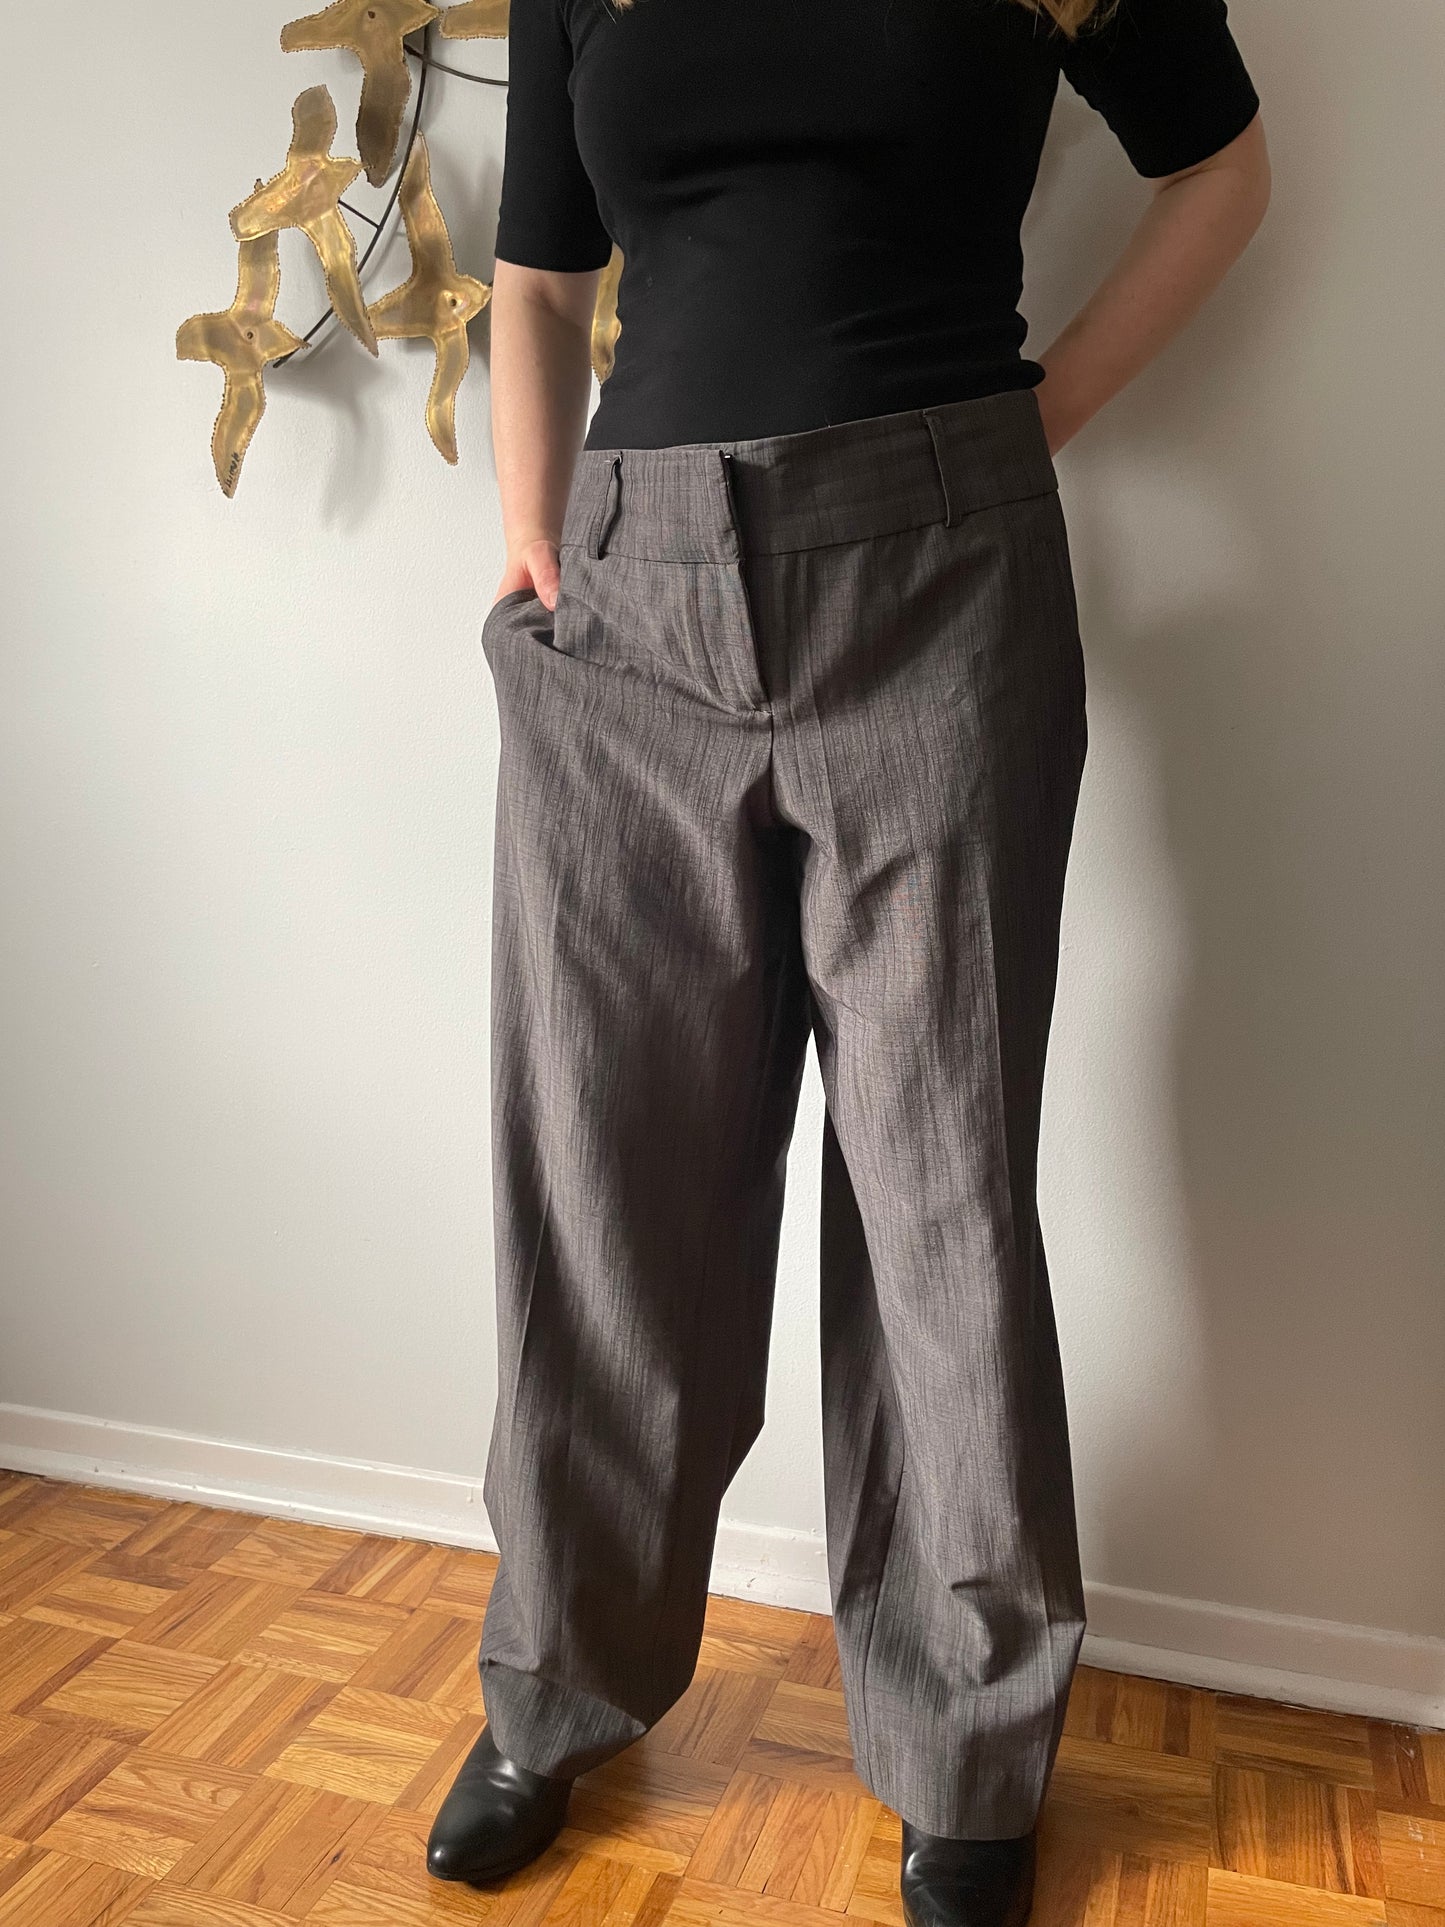 Ricki's Grey Straight Leg Trouser Pants - Size 16 – Le Prix